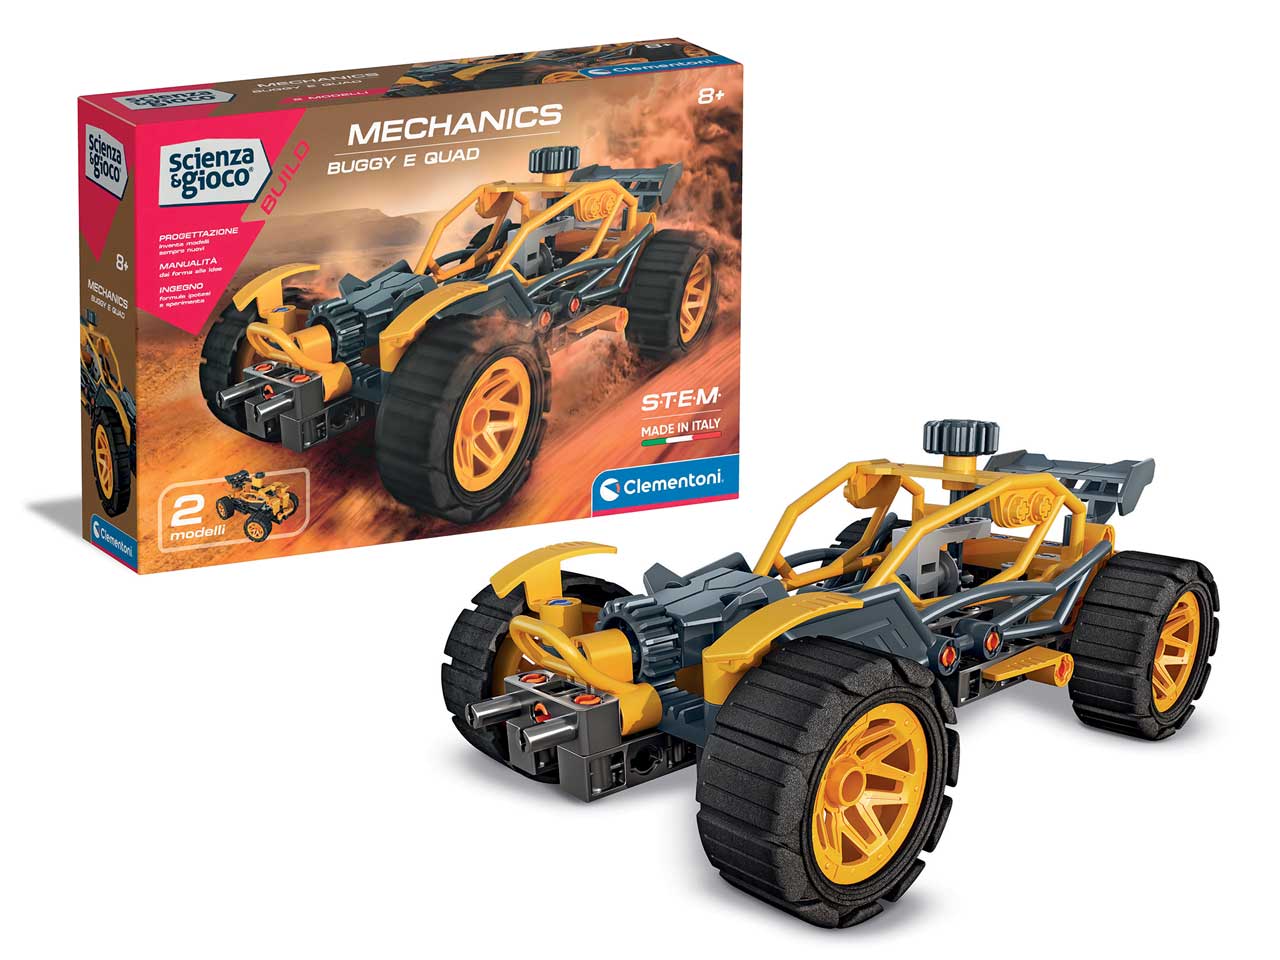 Scienza & gioco build buggy e quad new